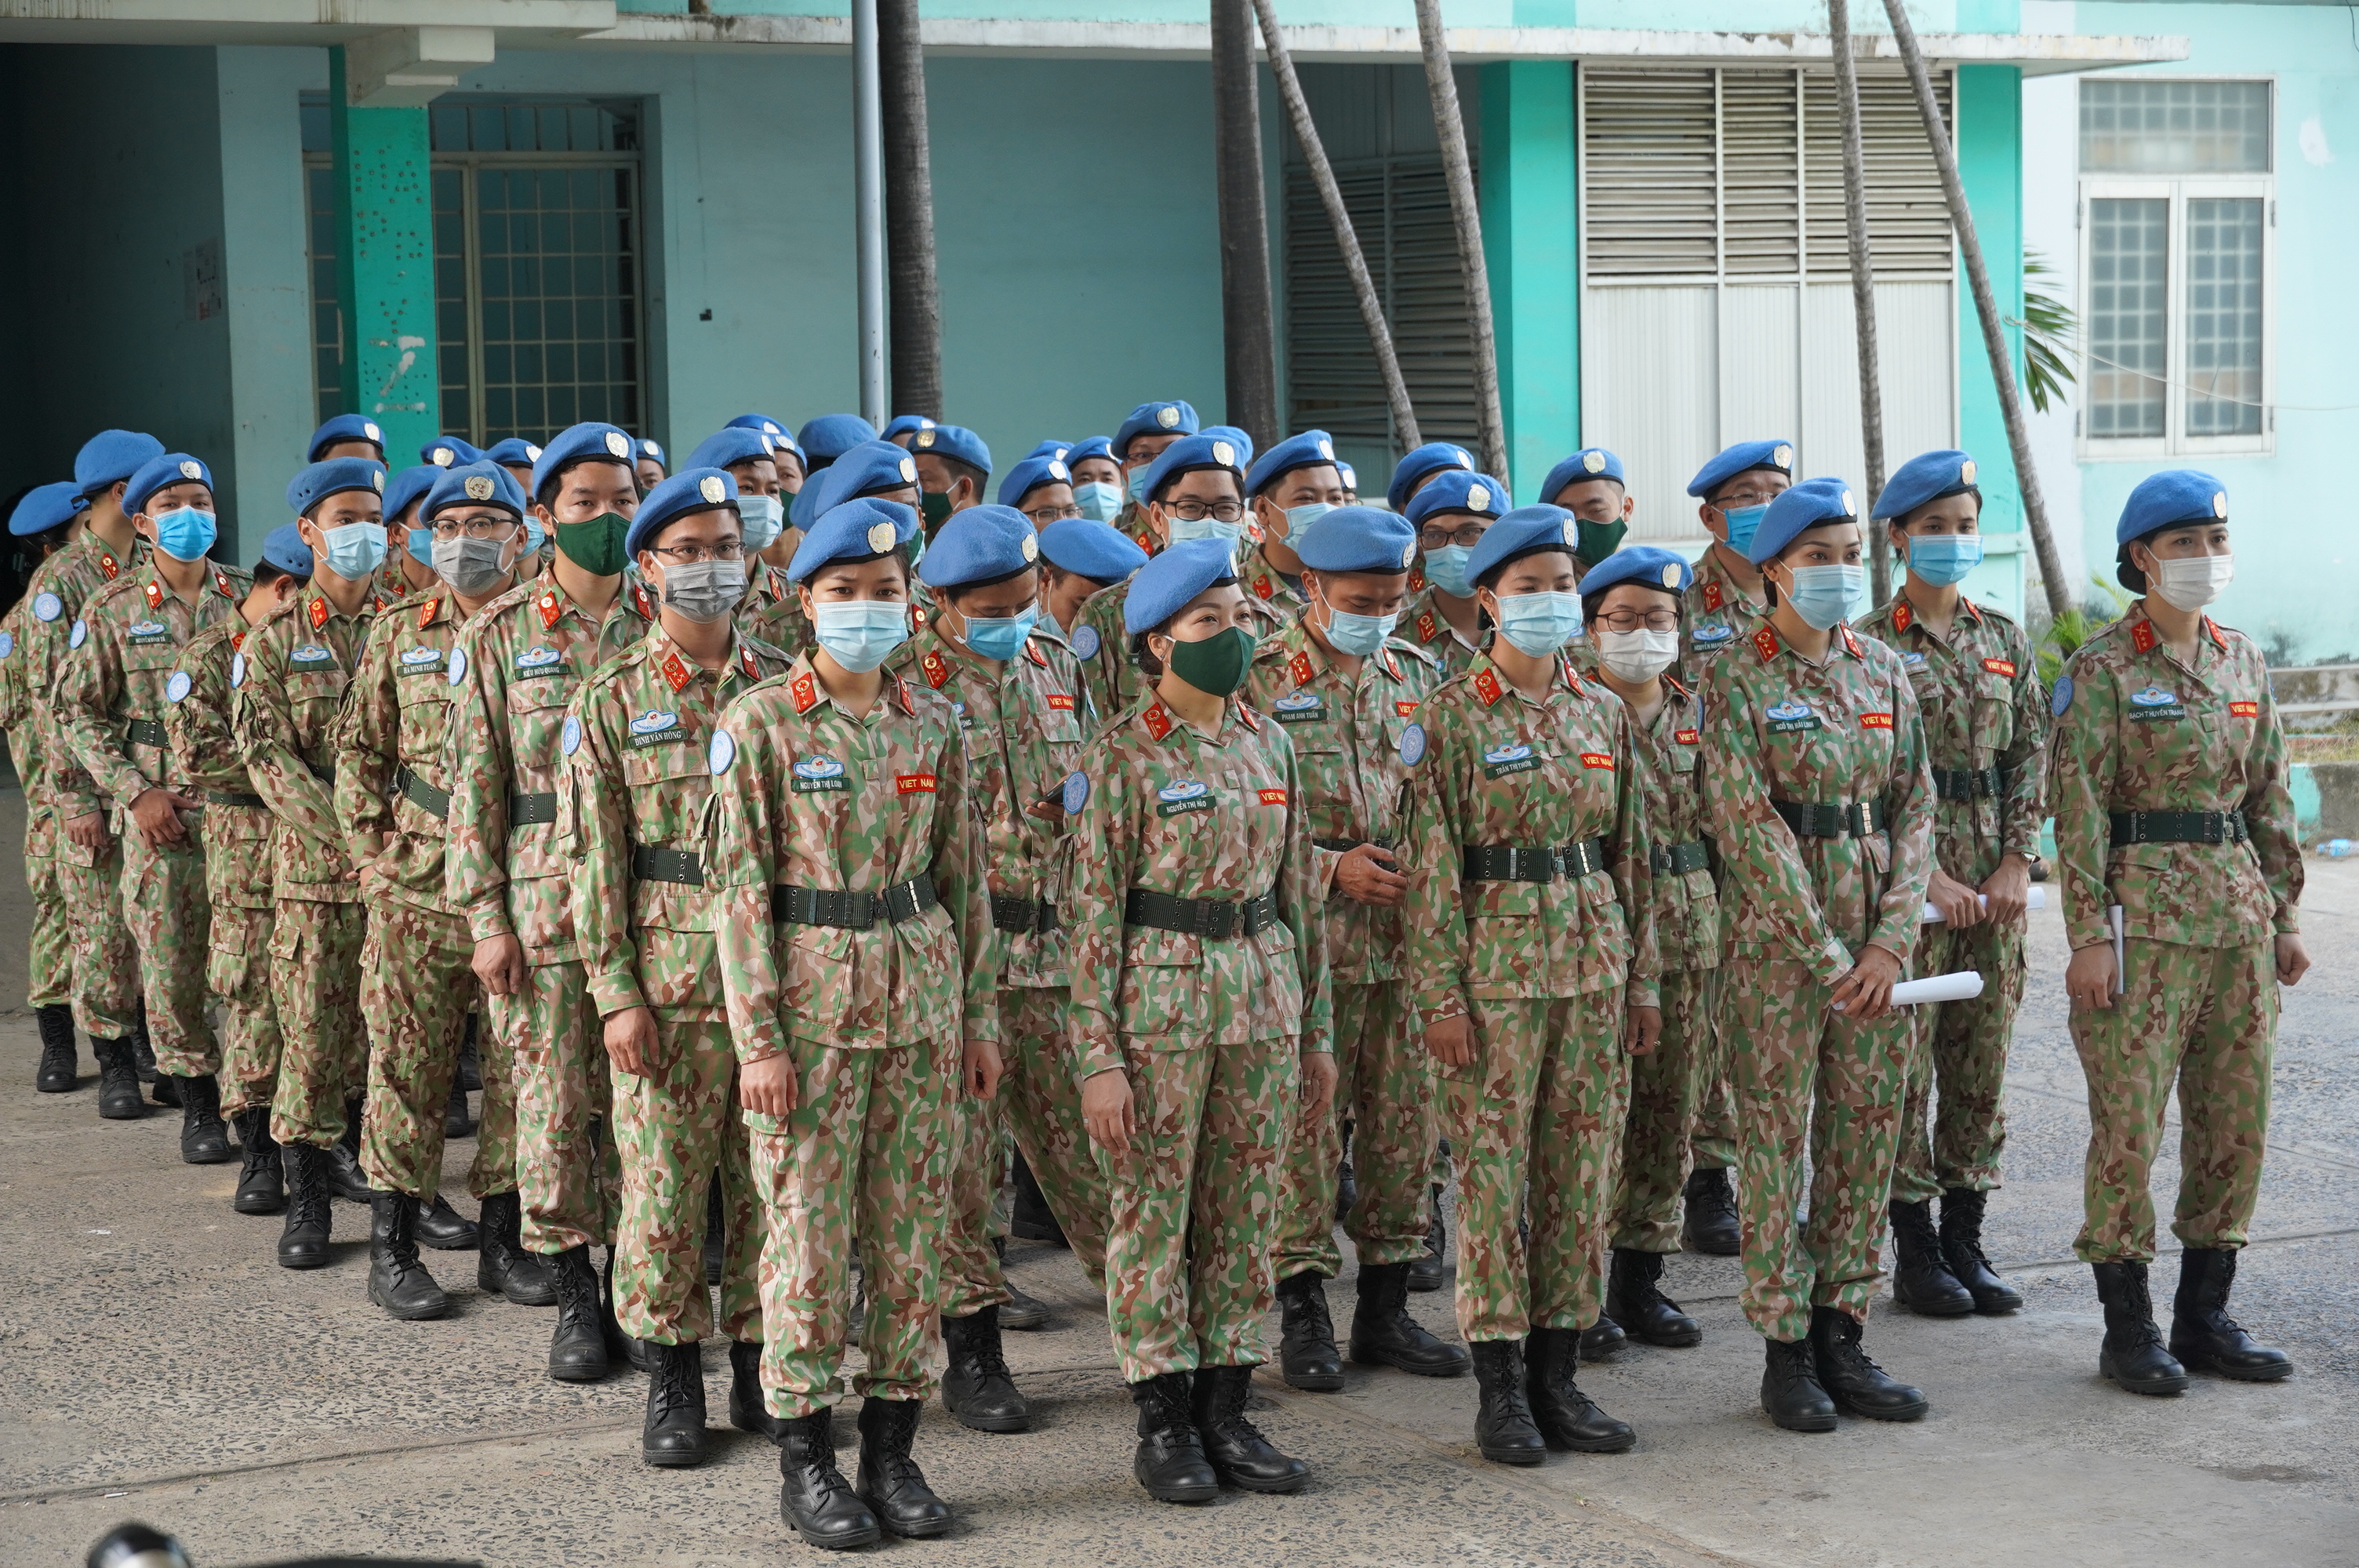 Bệnh viện Quân y 175 tiêm vaccine Covid-19 cho các quân nhân chuẩn bị nhận nhiệm vụ tại Nam Sudan - Ảnh 5.